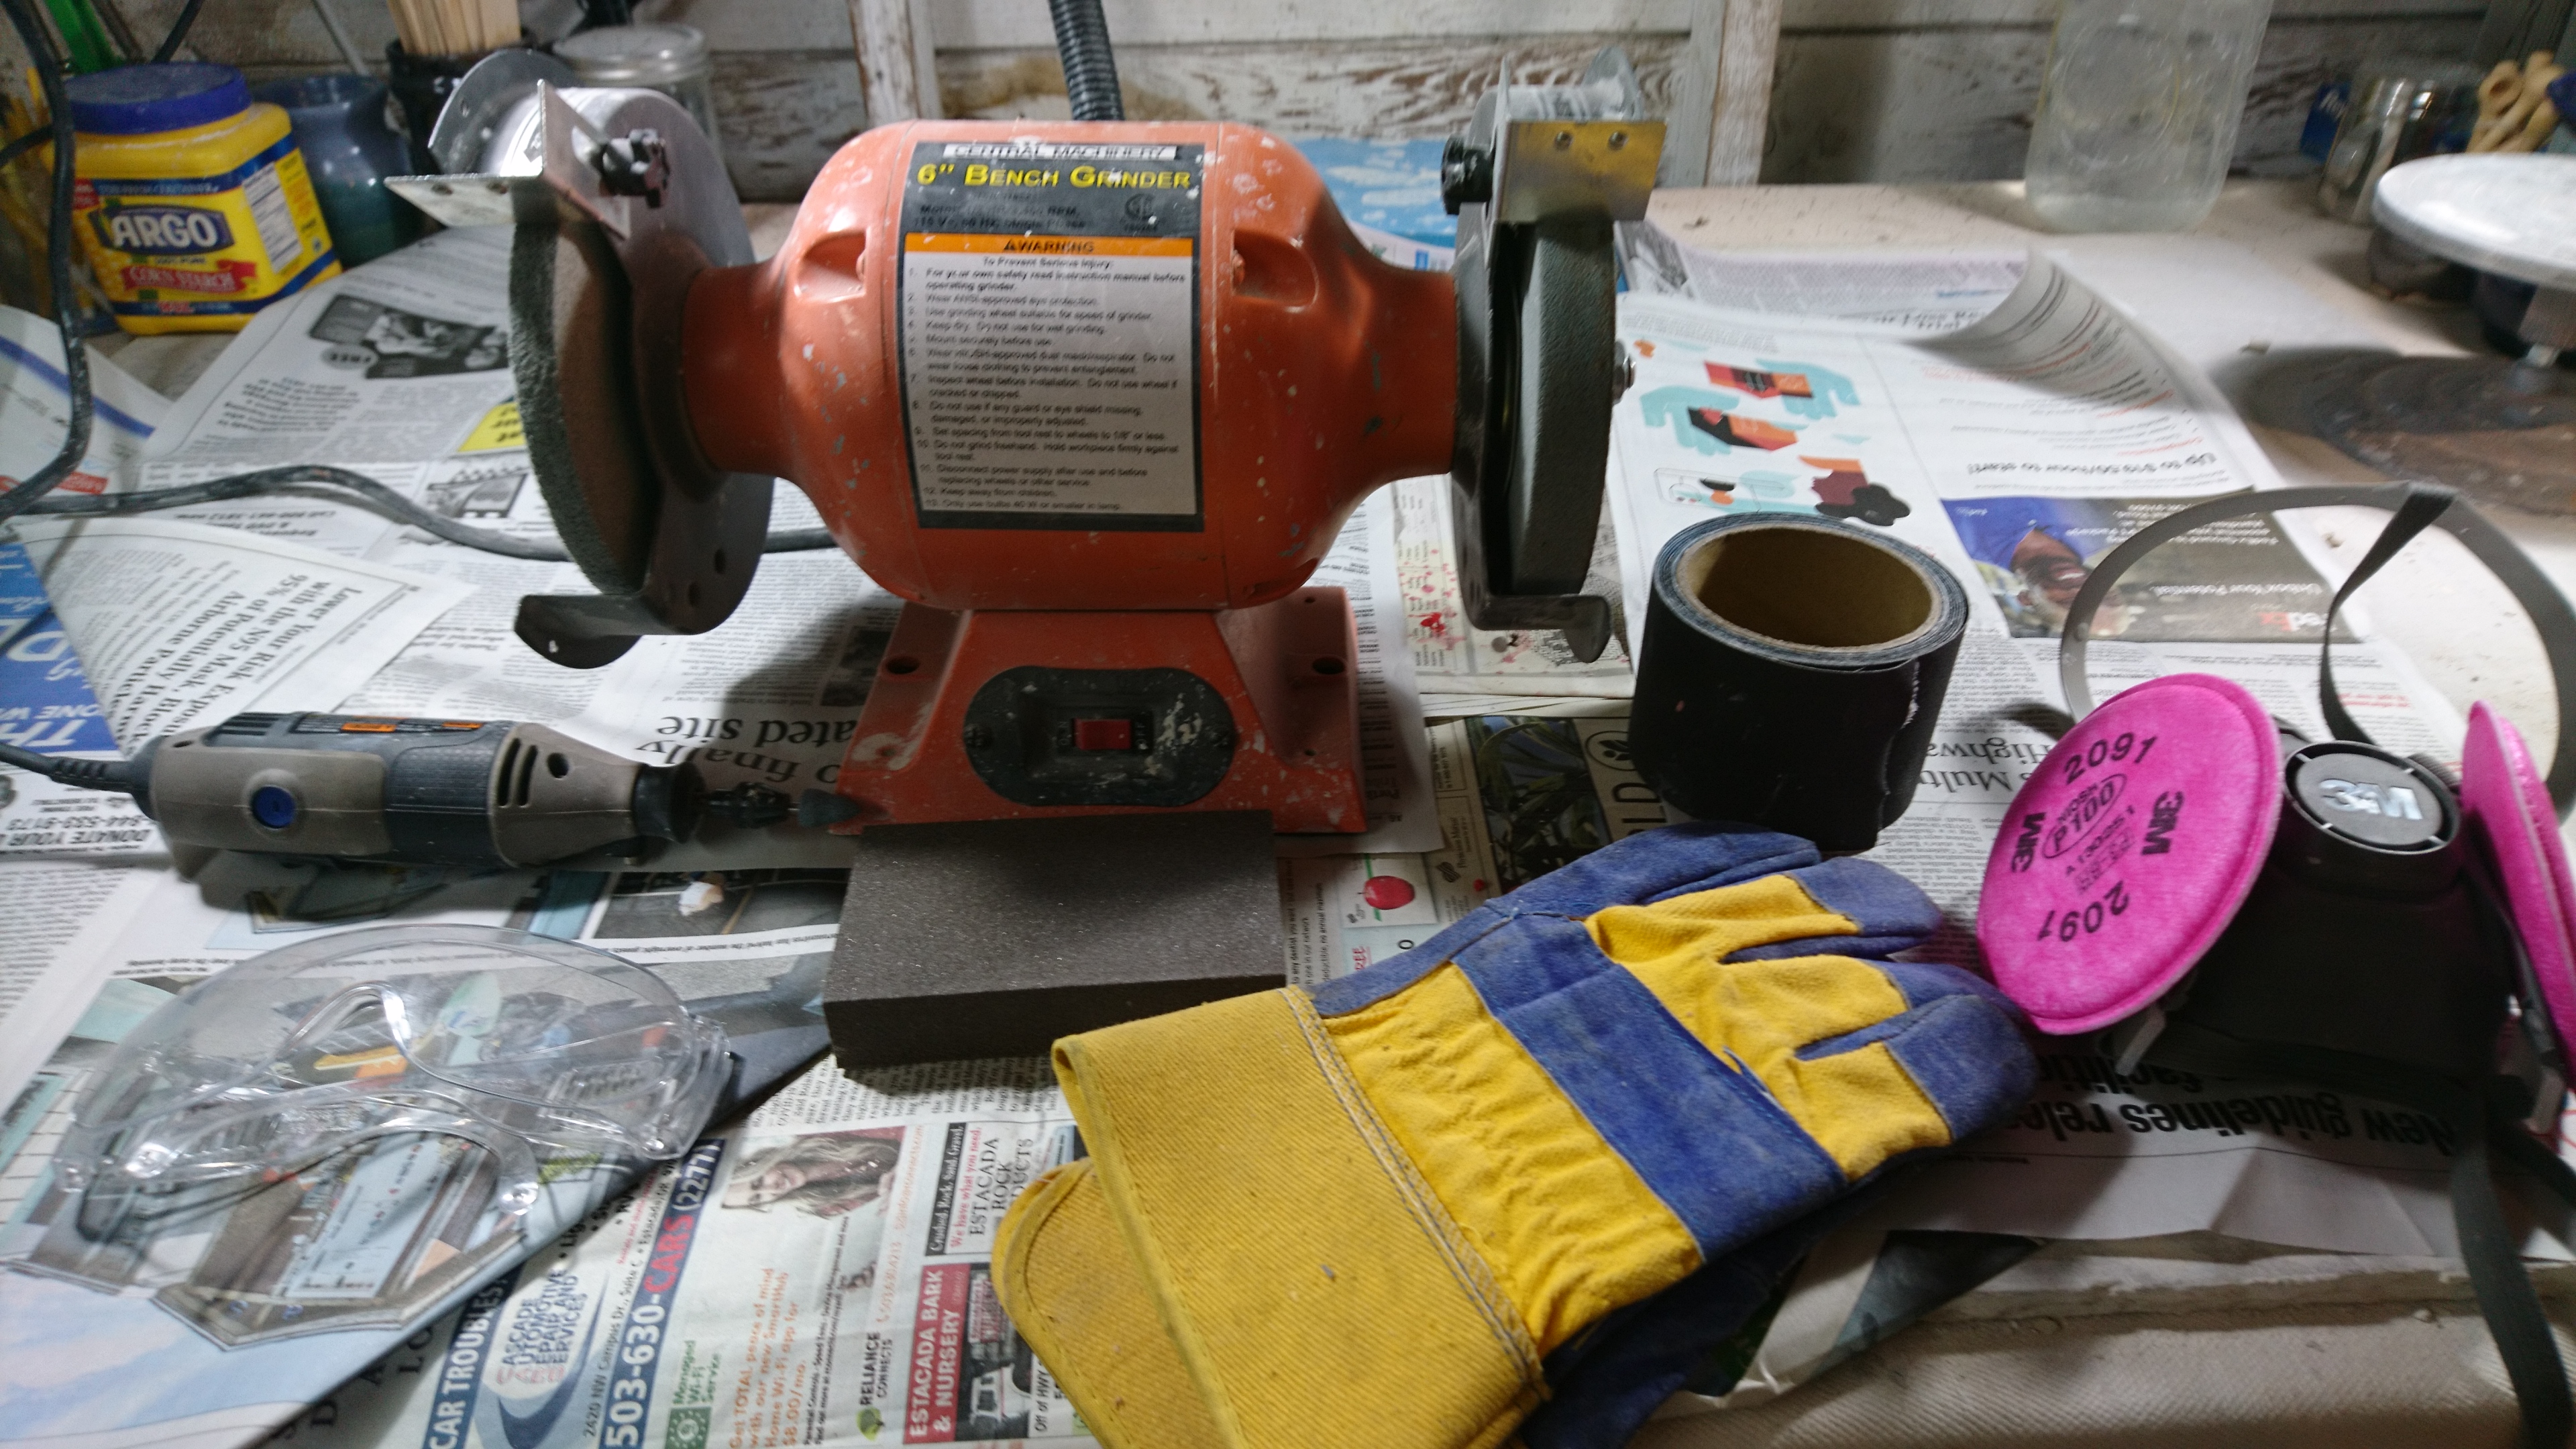 tools I use to smooth bottoms of pots, including bench grinder, sandpaper, dremel, etc.